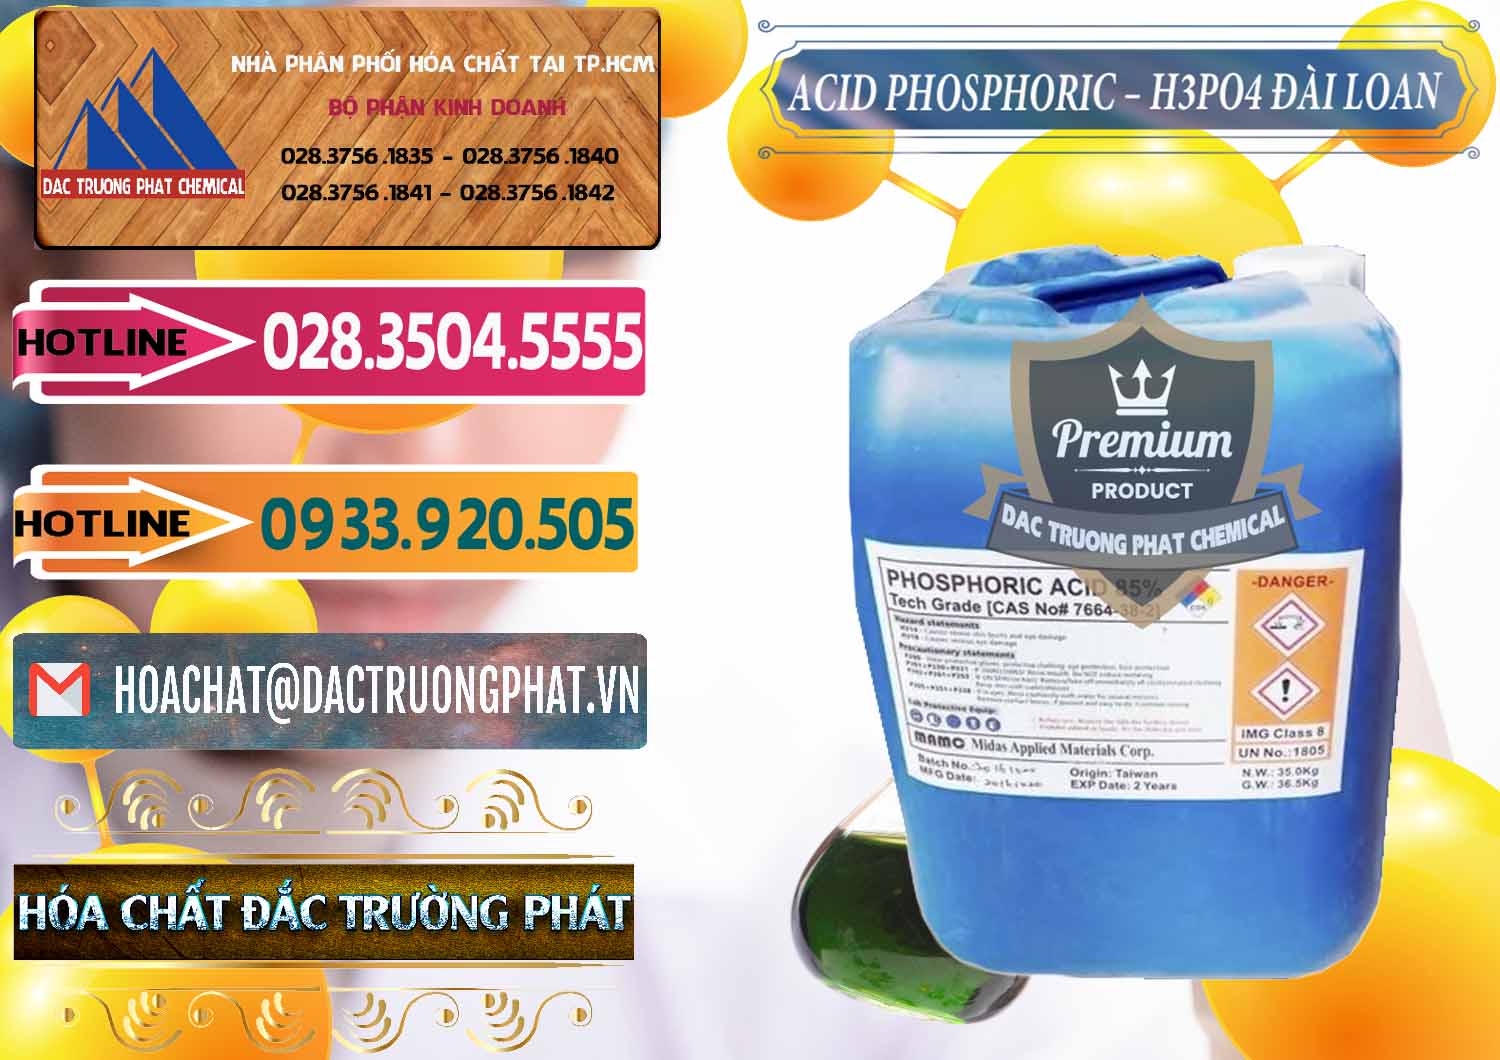 Chuyên bán ( cung cấp ) Axit Phosphoric - Acid Phosphoric H3PO4 85% Đài Loan Taiwan - 0351 - Nơi chuyên bán ( cung cấp ) hóa chất tại TP.HCM - dactruongphat.vn